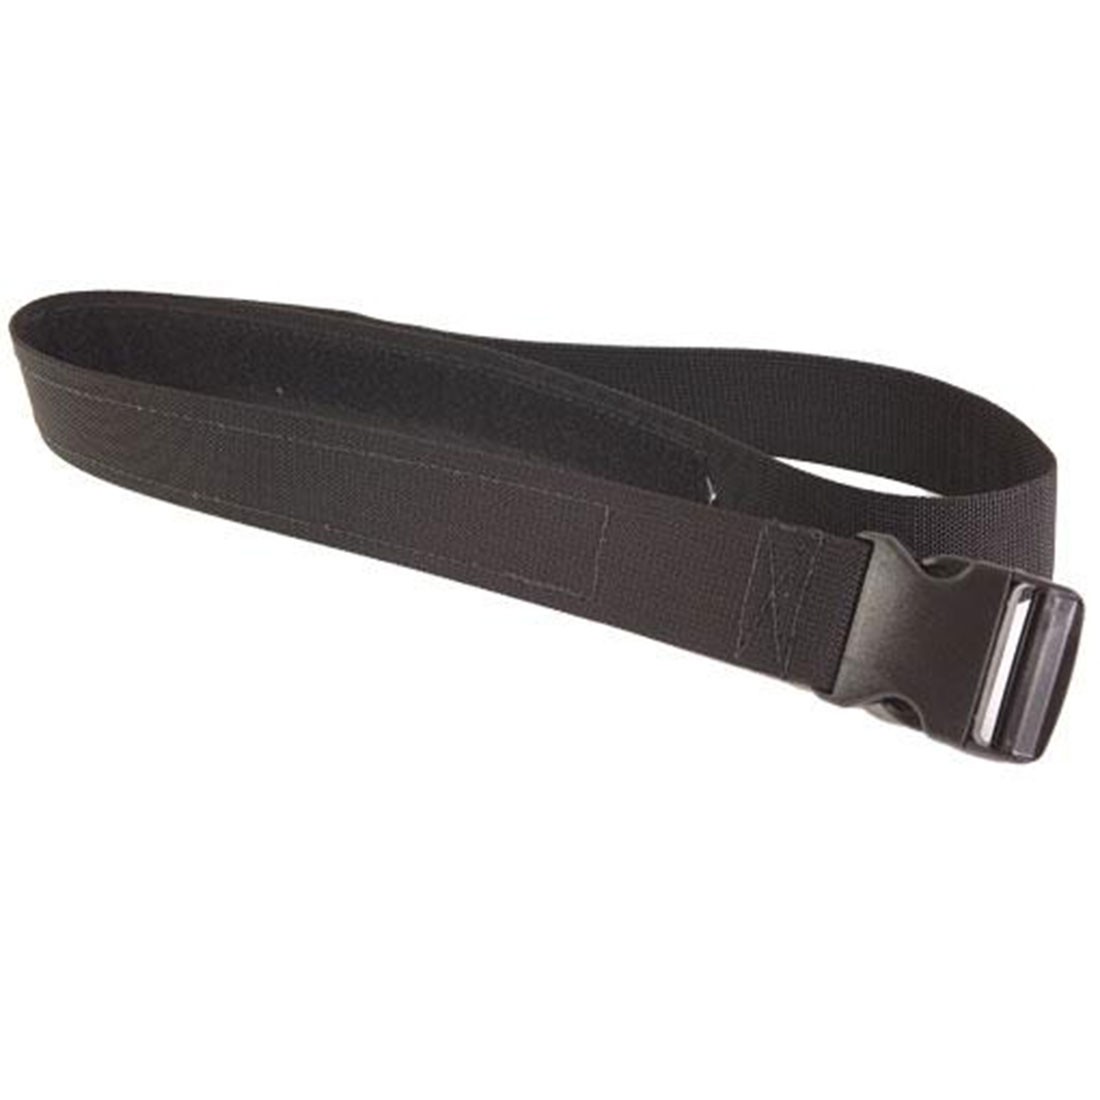 HSGI Duty Belt - XL (Black)